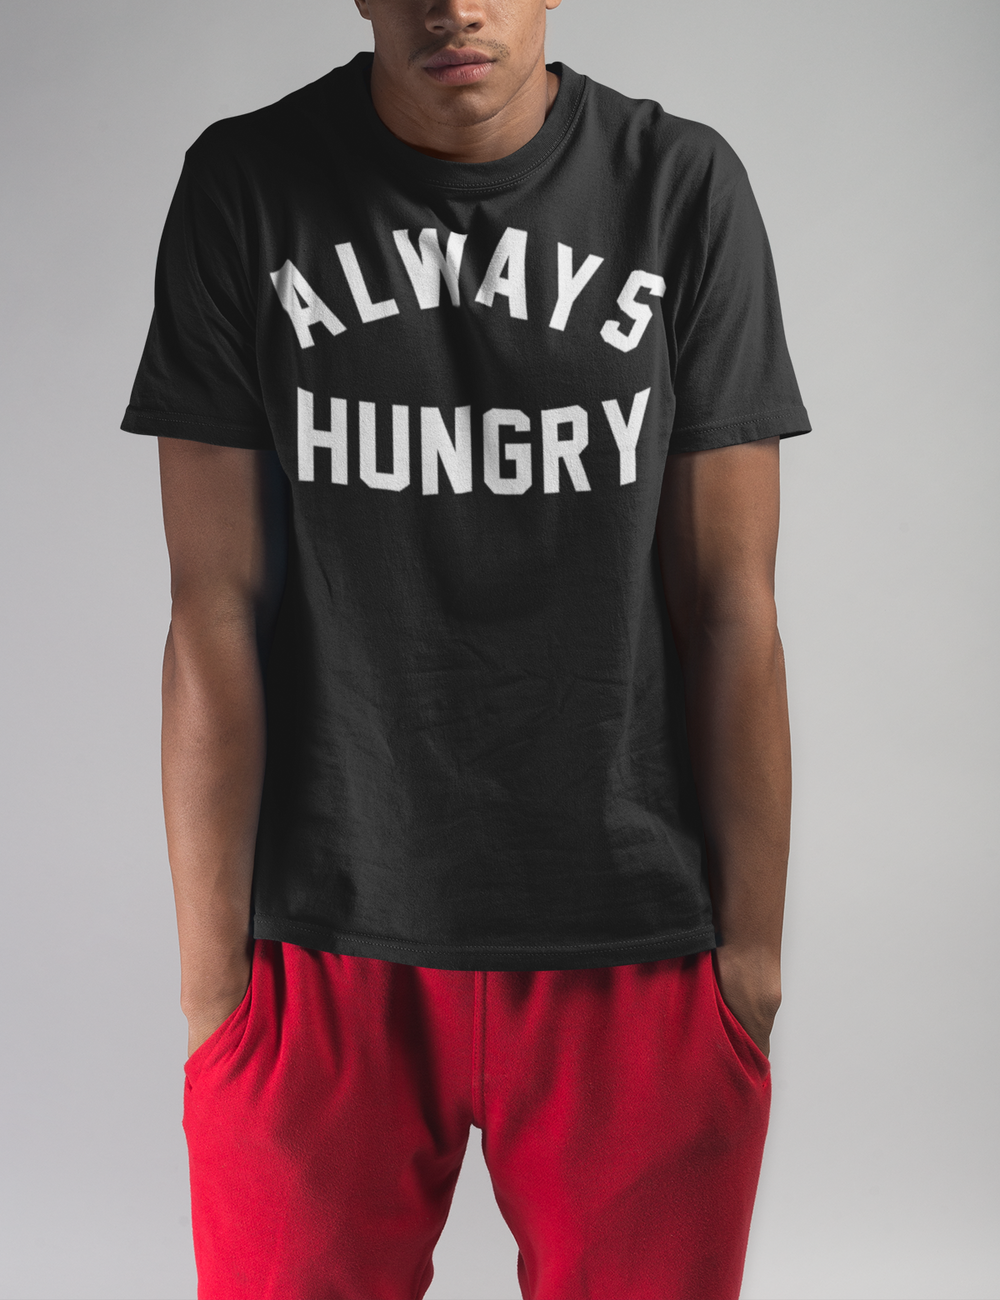 Always Hungry Men's Classic T-Shirt OniTakai